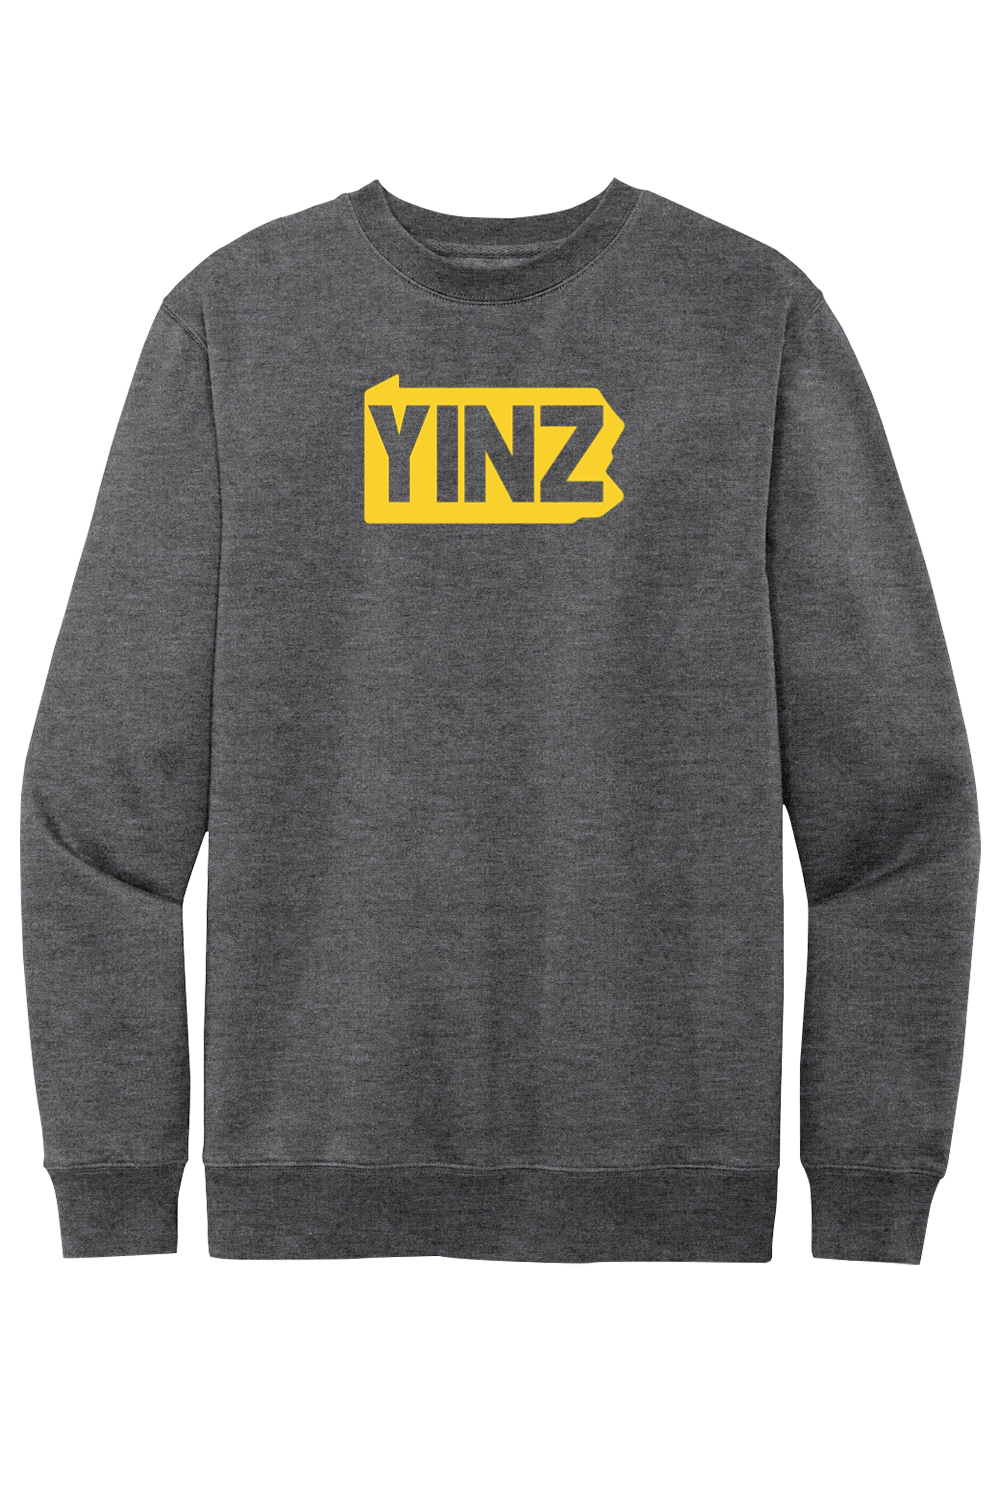 Yinzylvania Logo - Fleece Crewneck Sweatshirt - Yinzylvania